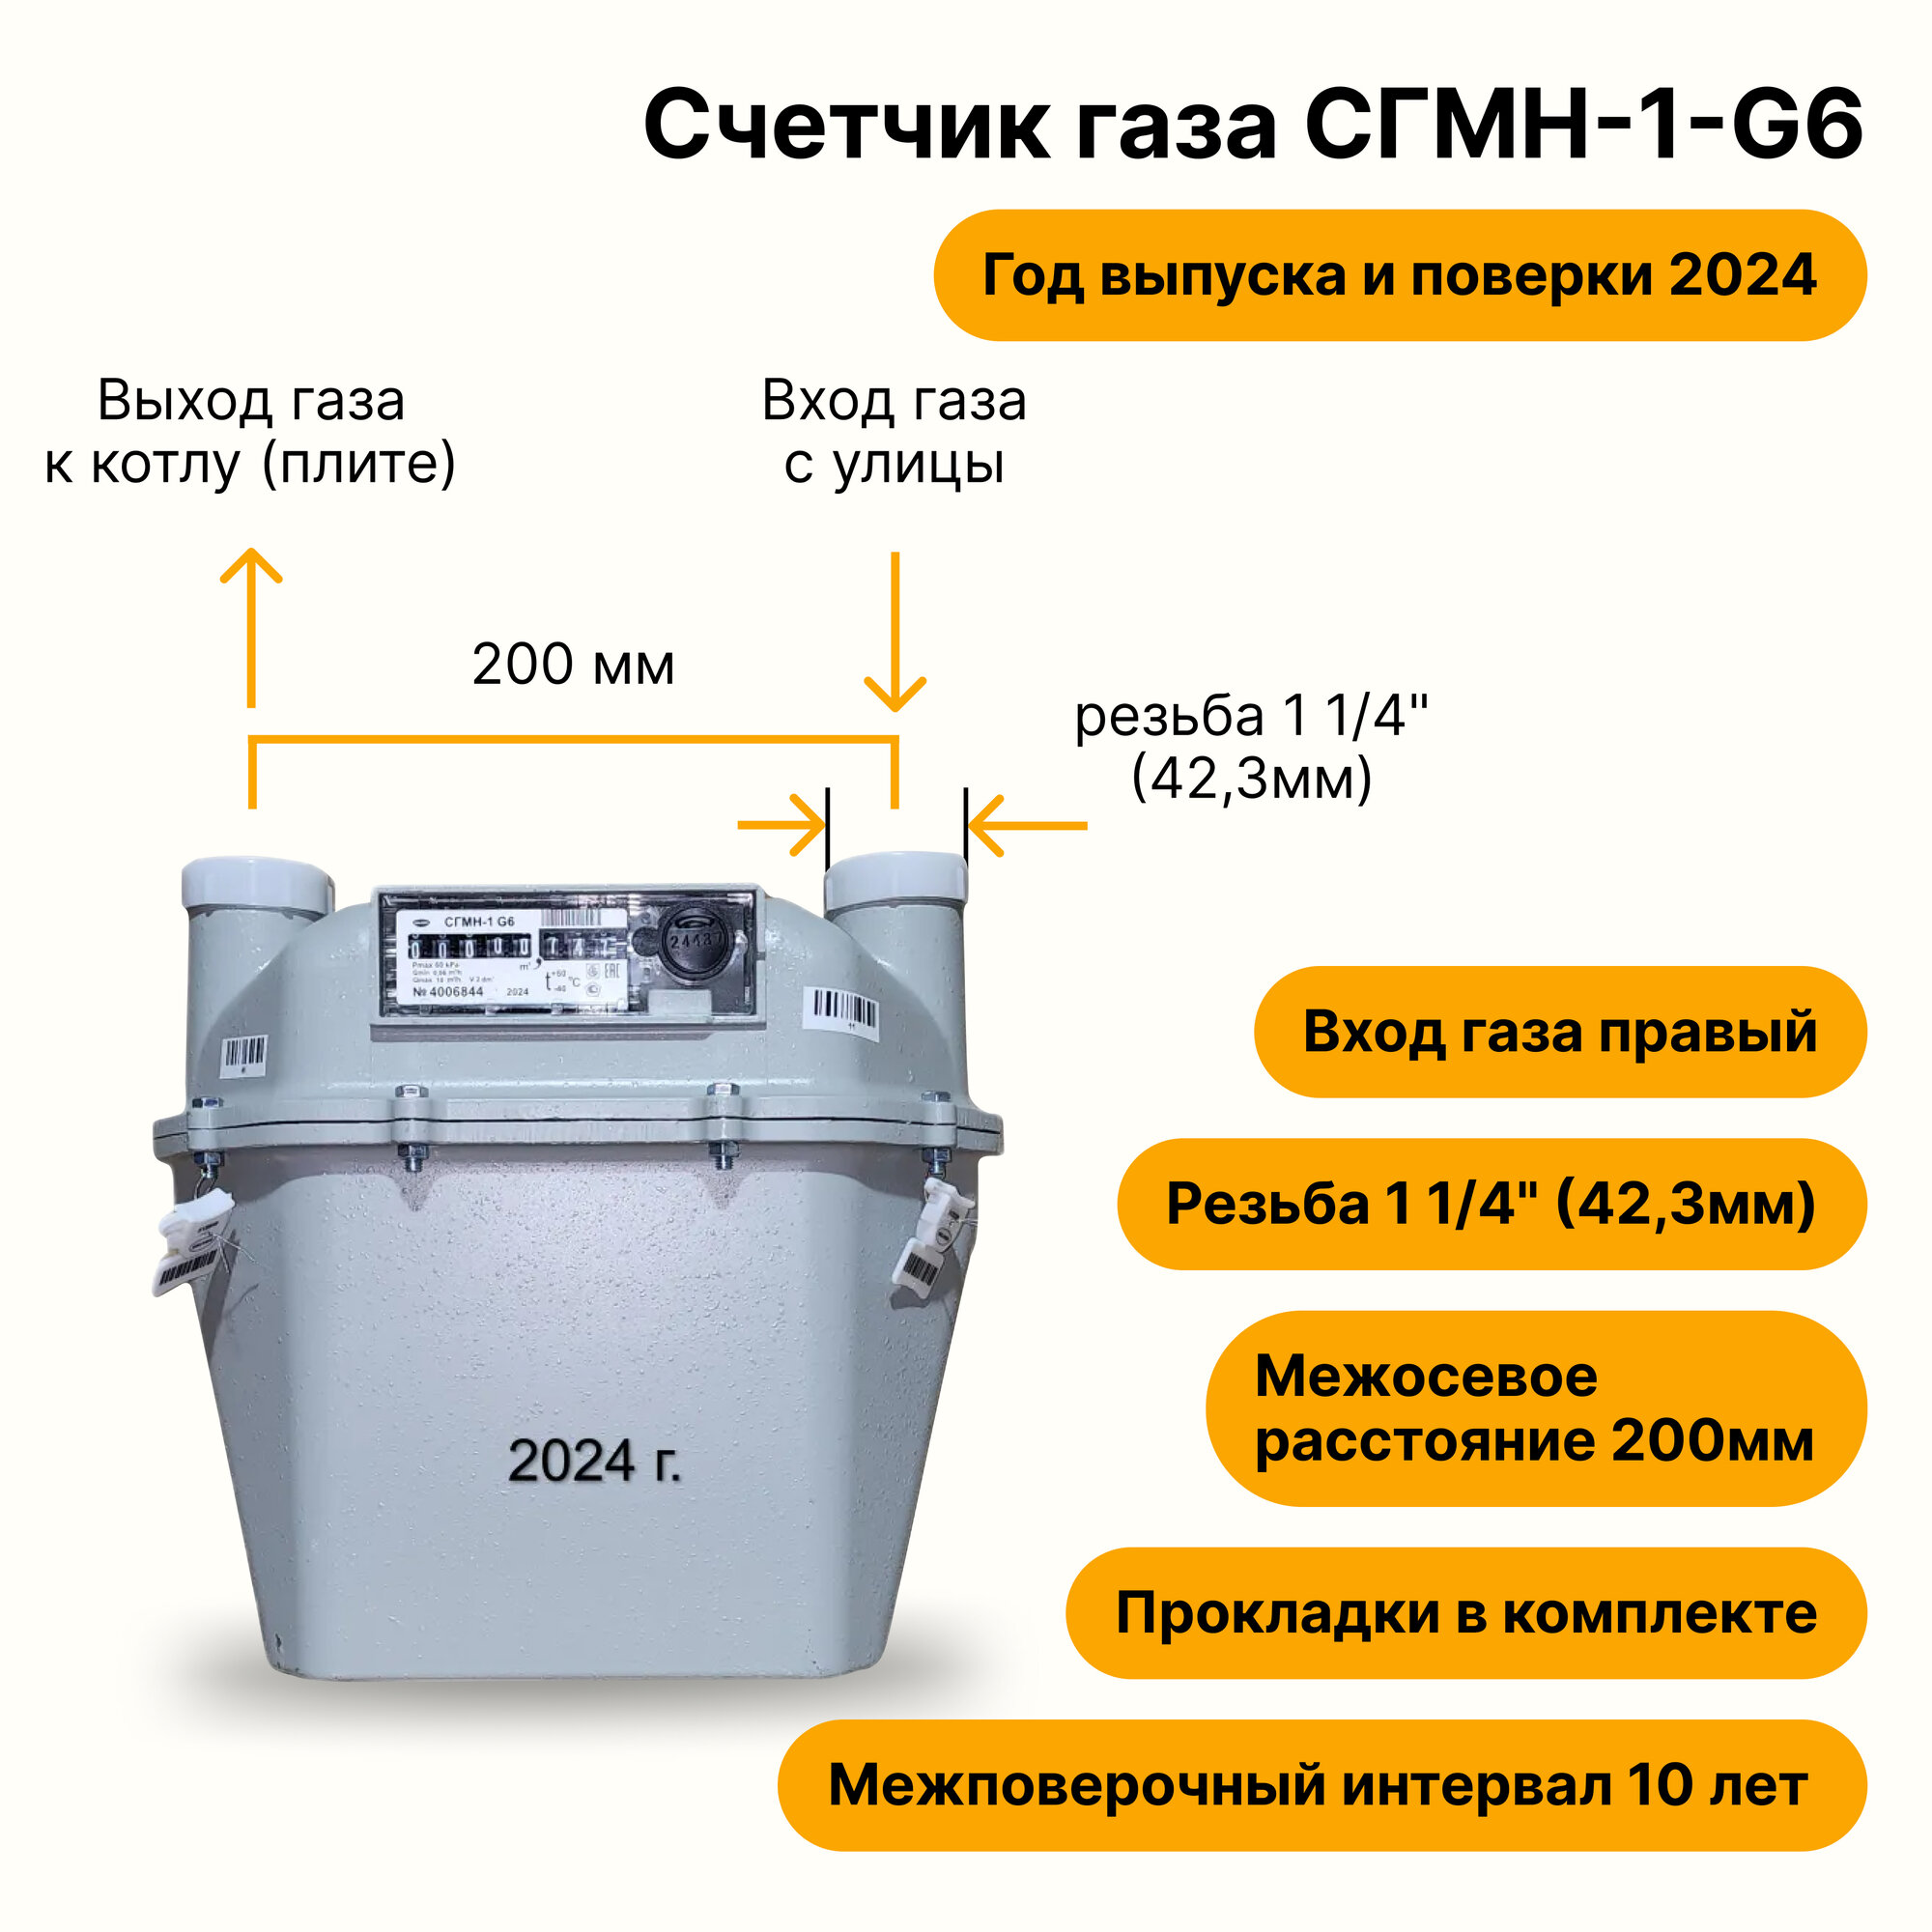 СГМН-1-G6 (вход газа <--правый, 200мм, резьба 1 1/4", прокладки В комплекте) 2024 года выпуска и поверки